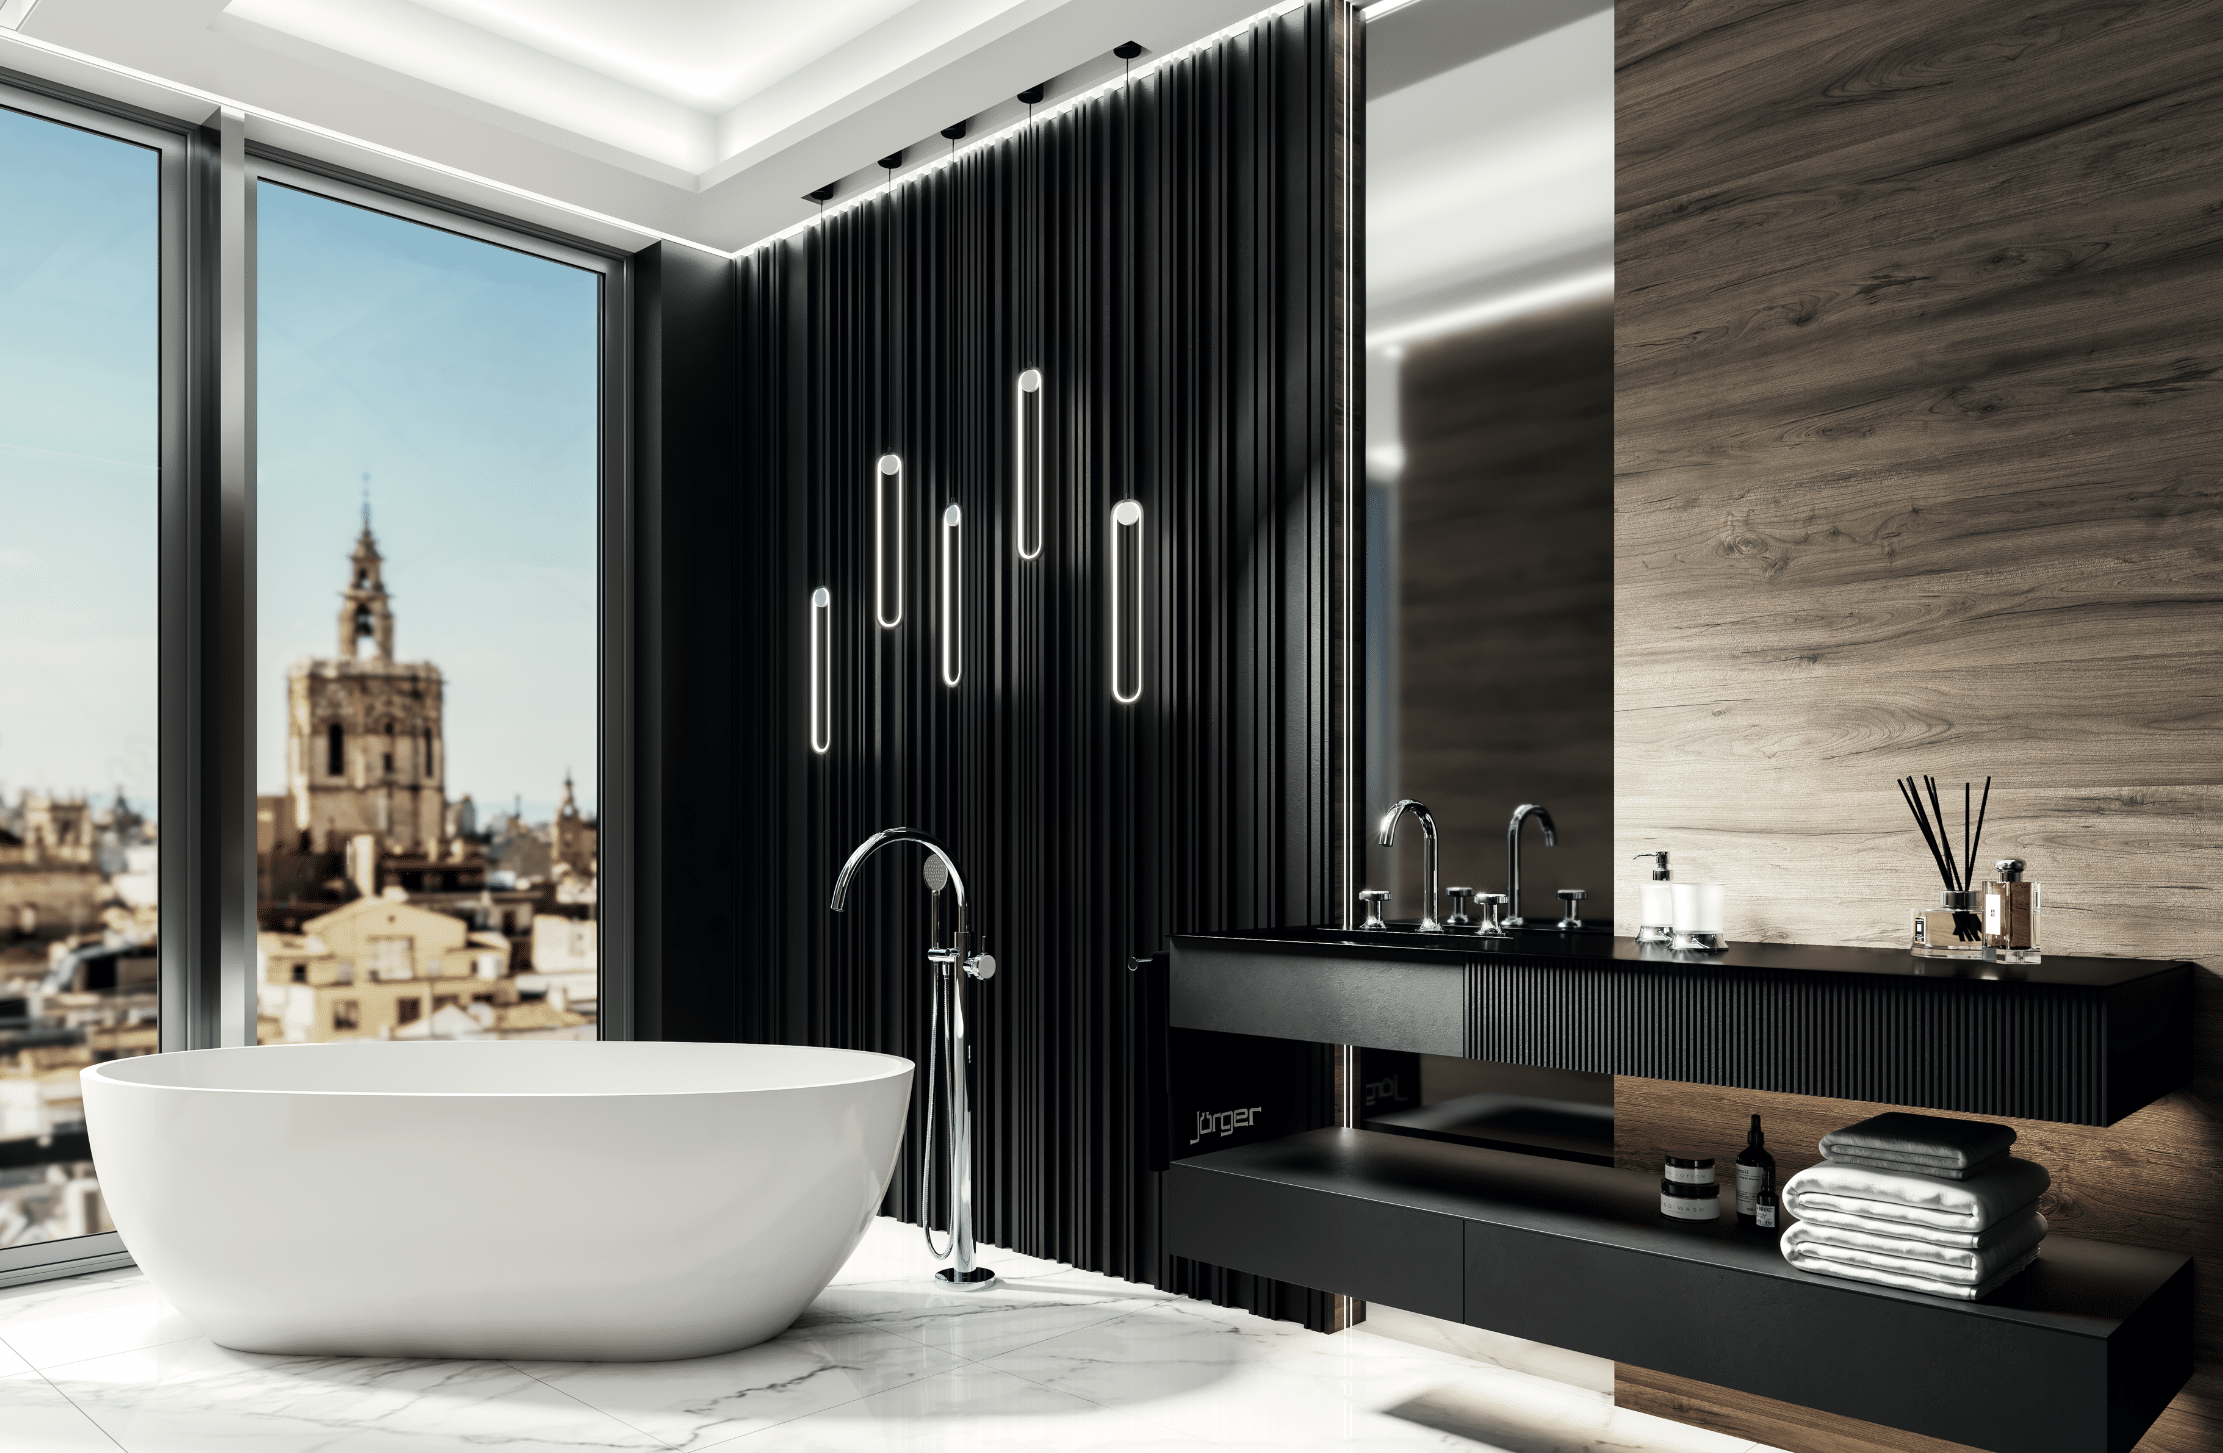 Jörger präsentiert ein sehr modernes Badezimmer mit freistehender Badewanne, einem an der Wand montierten Waschtisch mit schwarzen Armaturen und großen Fenstern.